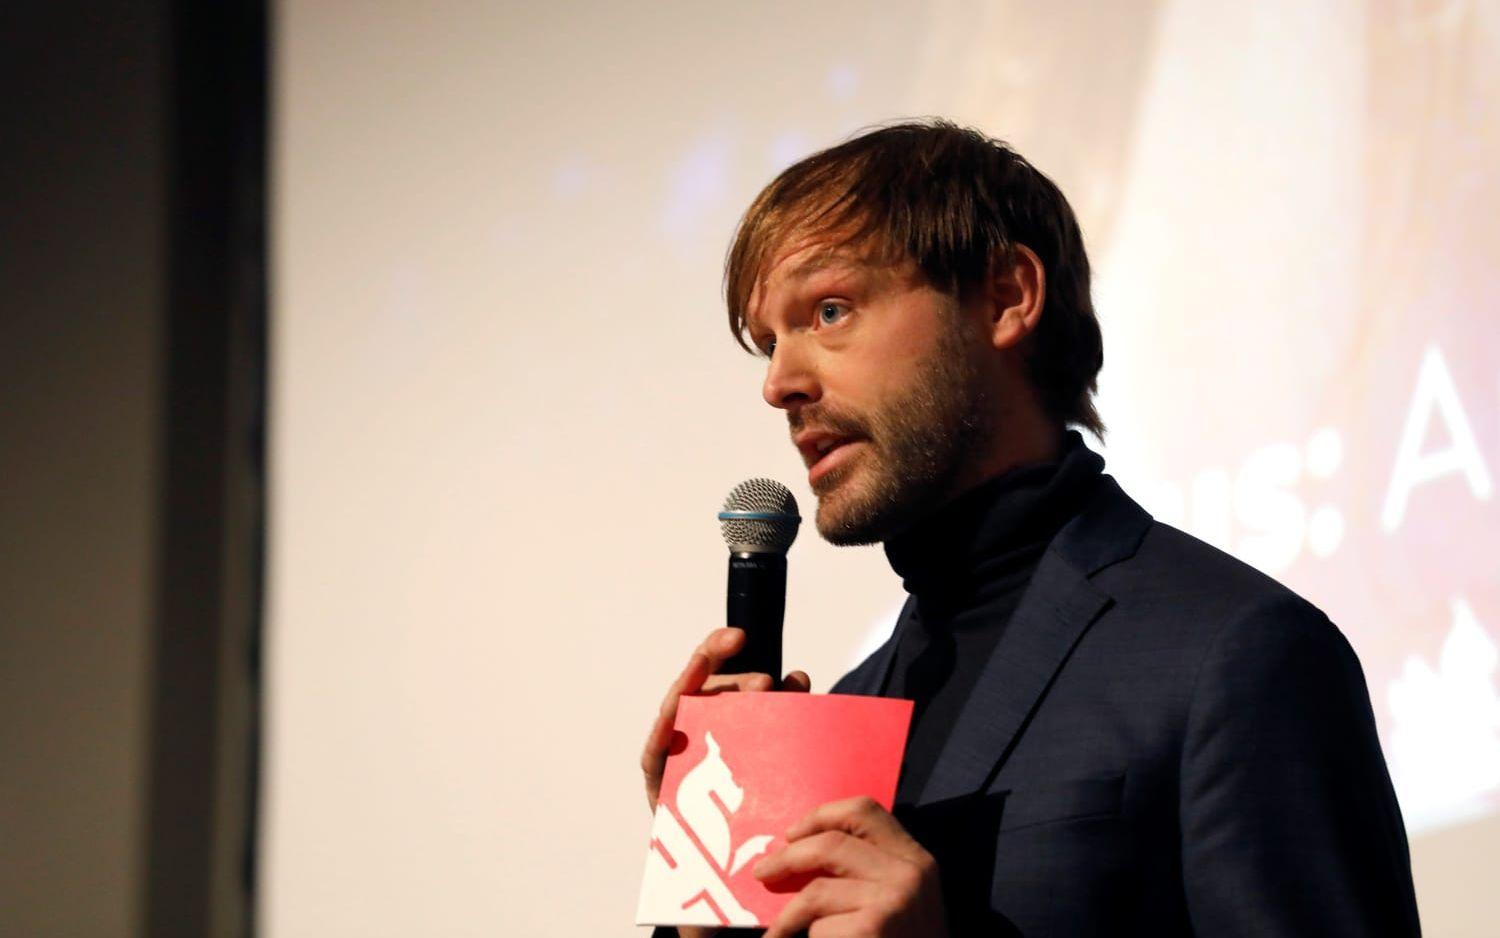 Festivalens konstnärlige ledare Jonas Holmberg presenterade på tisdagen programmet till Göteborgs 42:a filmfestival.